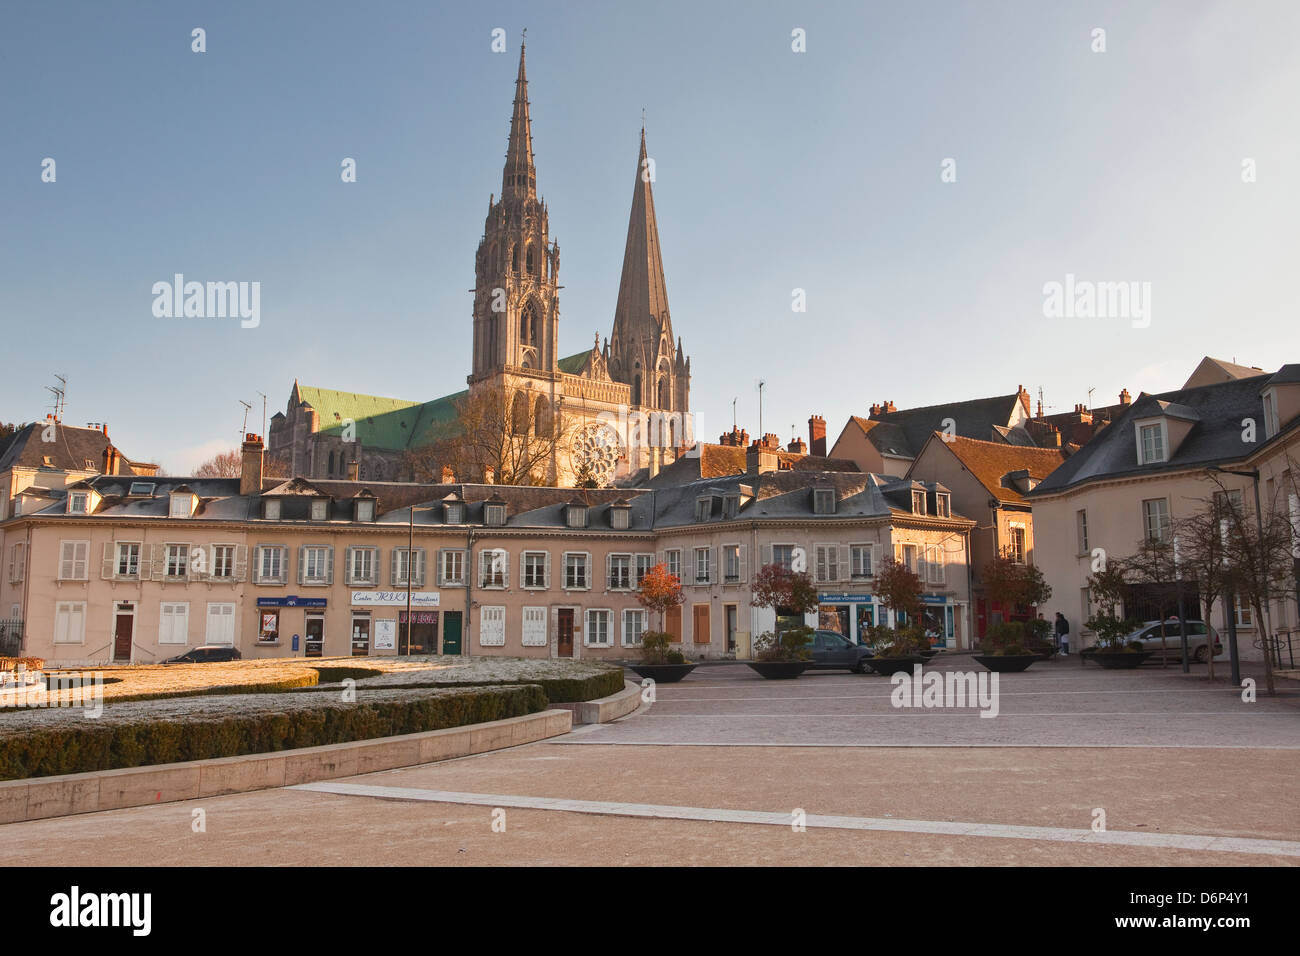 Le quartier gothique de la cathédrale de Chartres, l'UNESCO World Heritage Site, Chartres, Eure-et-Loir, Centre, France, Europe Banque D'Images